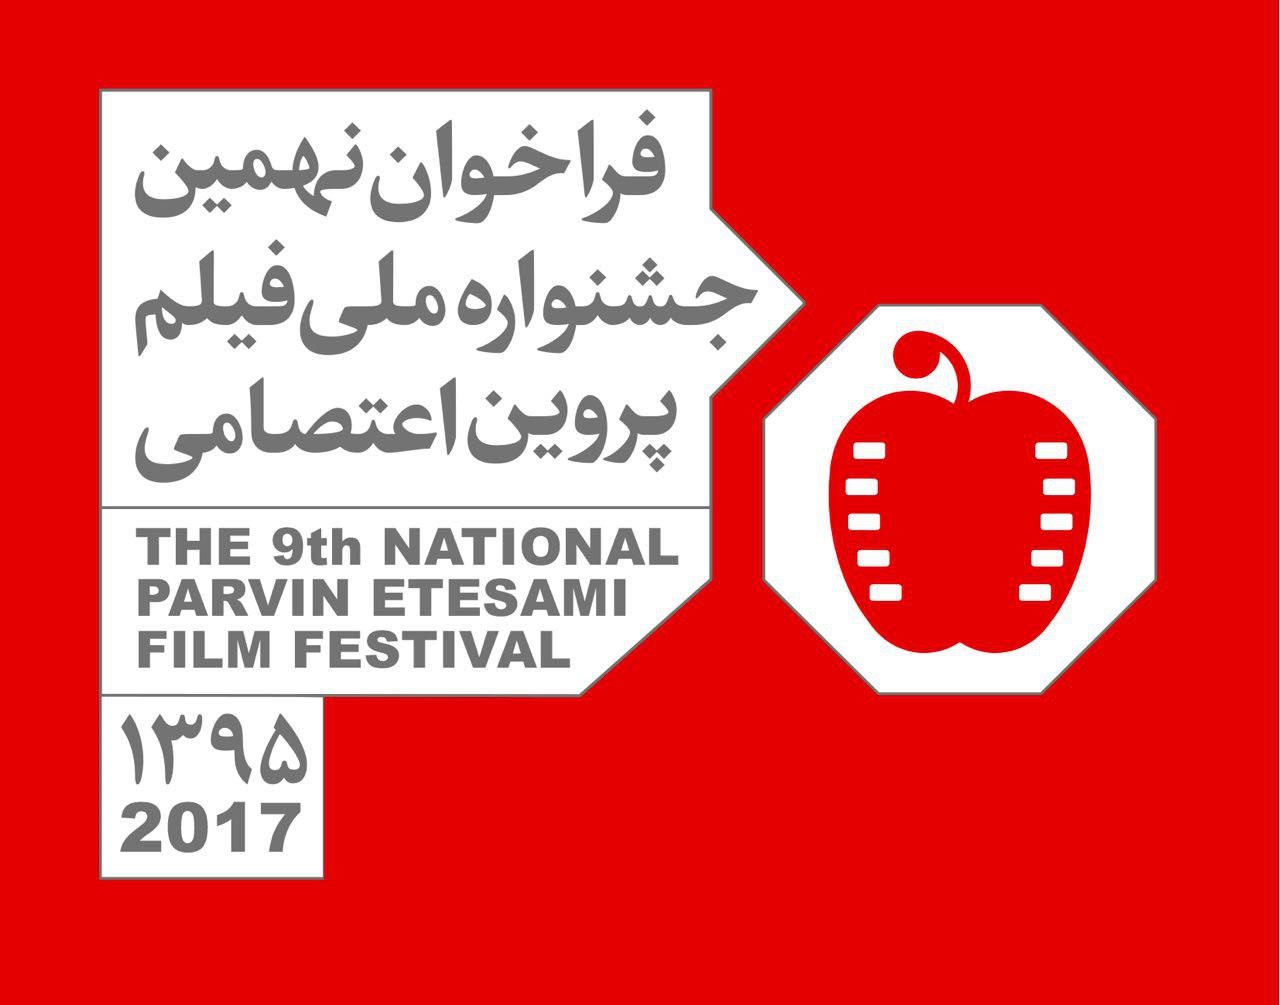 انتشار فراخوان نهمین جشنواره ملی فیلم پروین اعتصامی